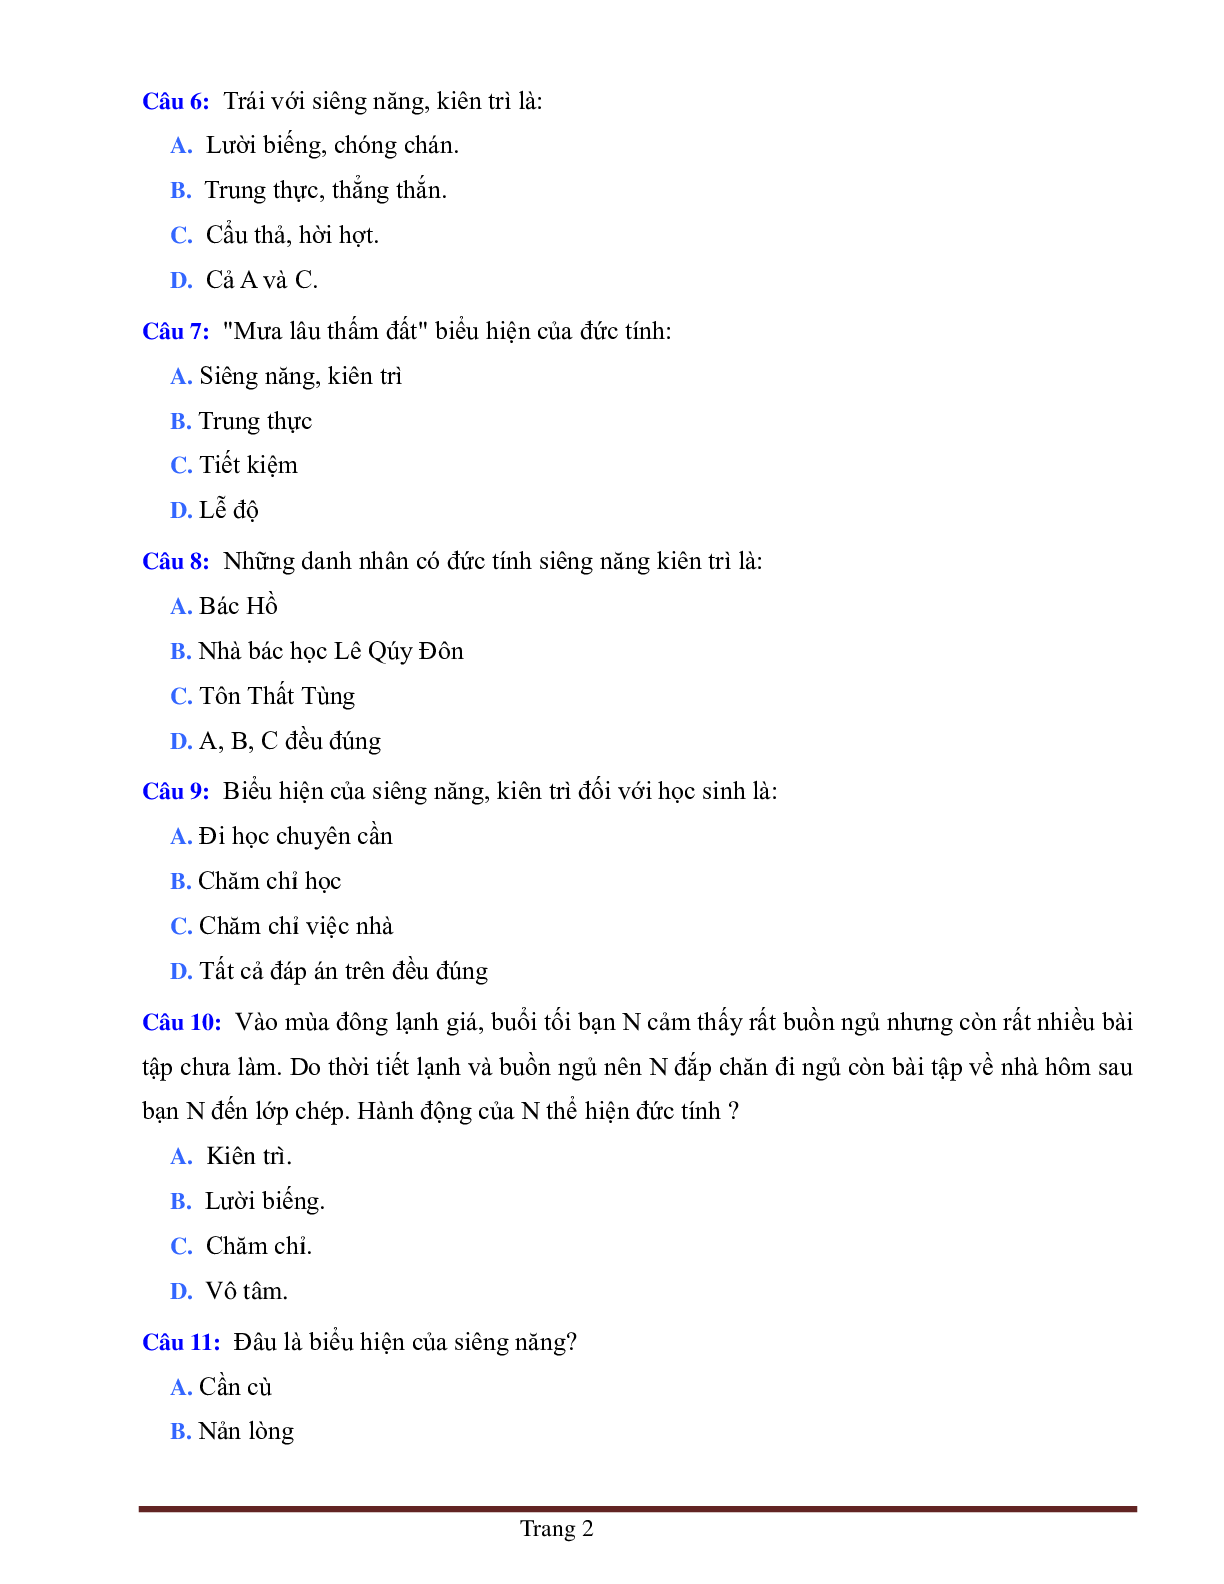 BÀI TẬP TRẮC NGHIỆM GDCD 6 BÀI 2: SIÊNG NĂNG, KIÊN TRÌ (trang 2)